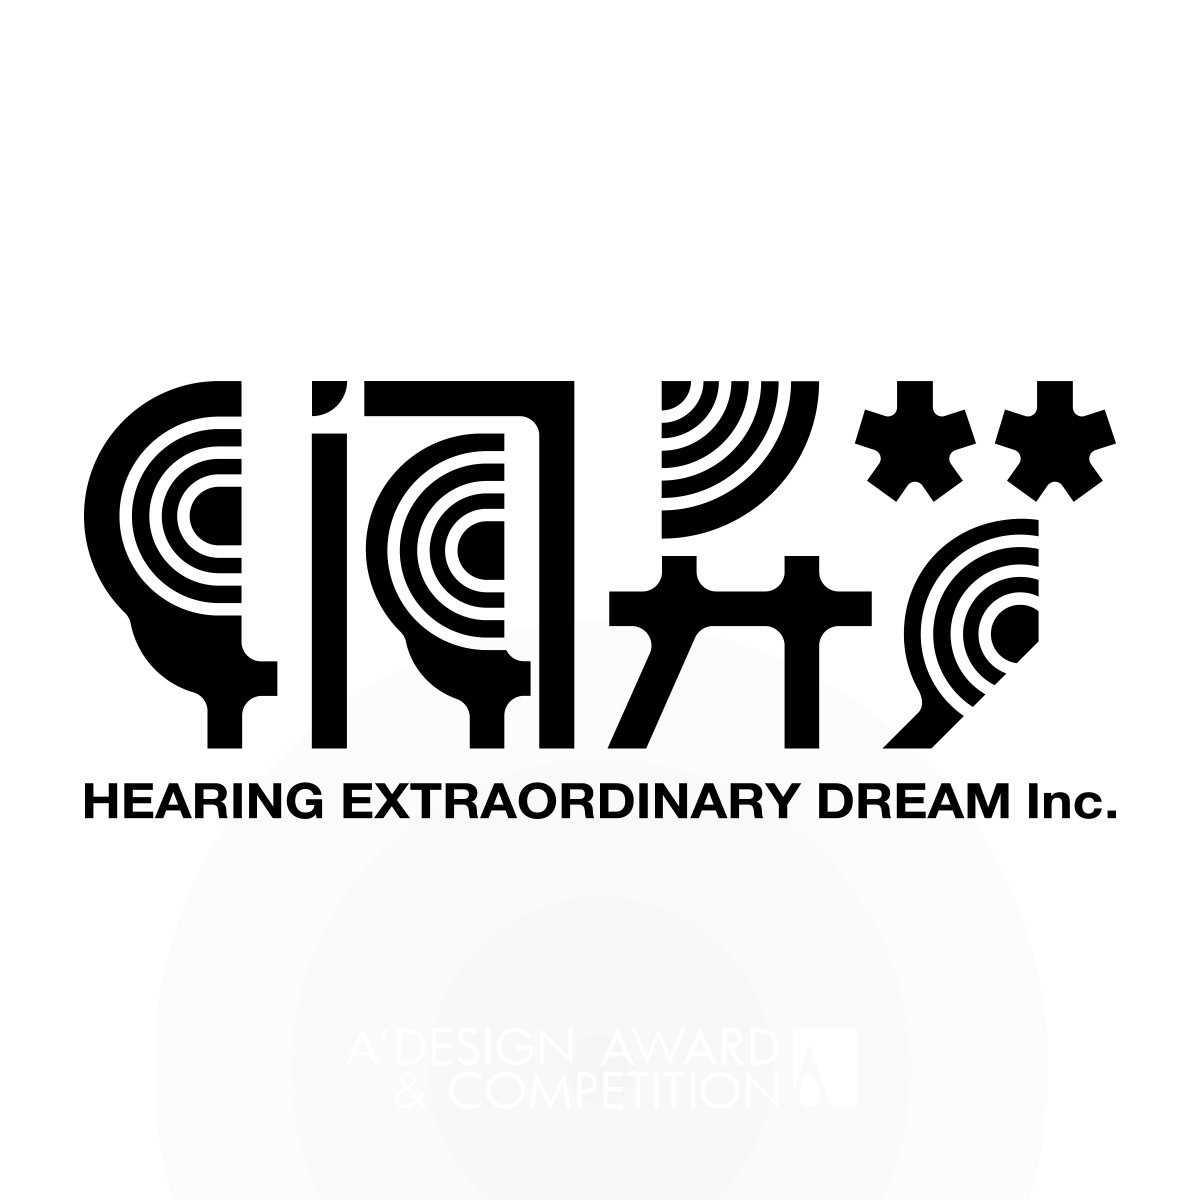 Hearing Extraordinary Dream Logo by Qiuyu Li